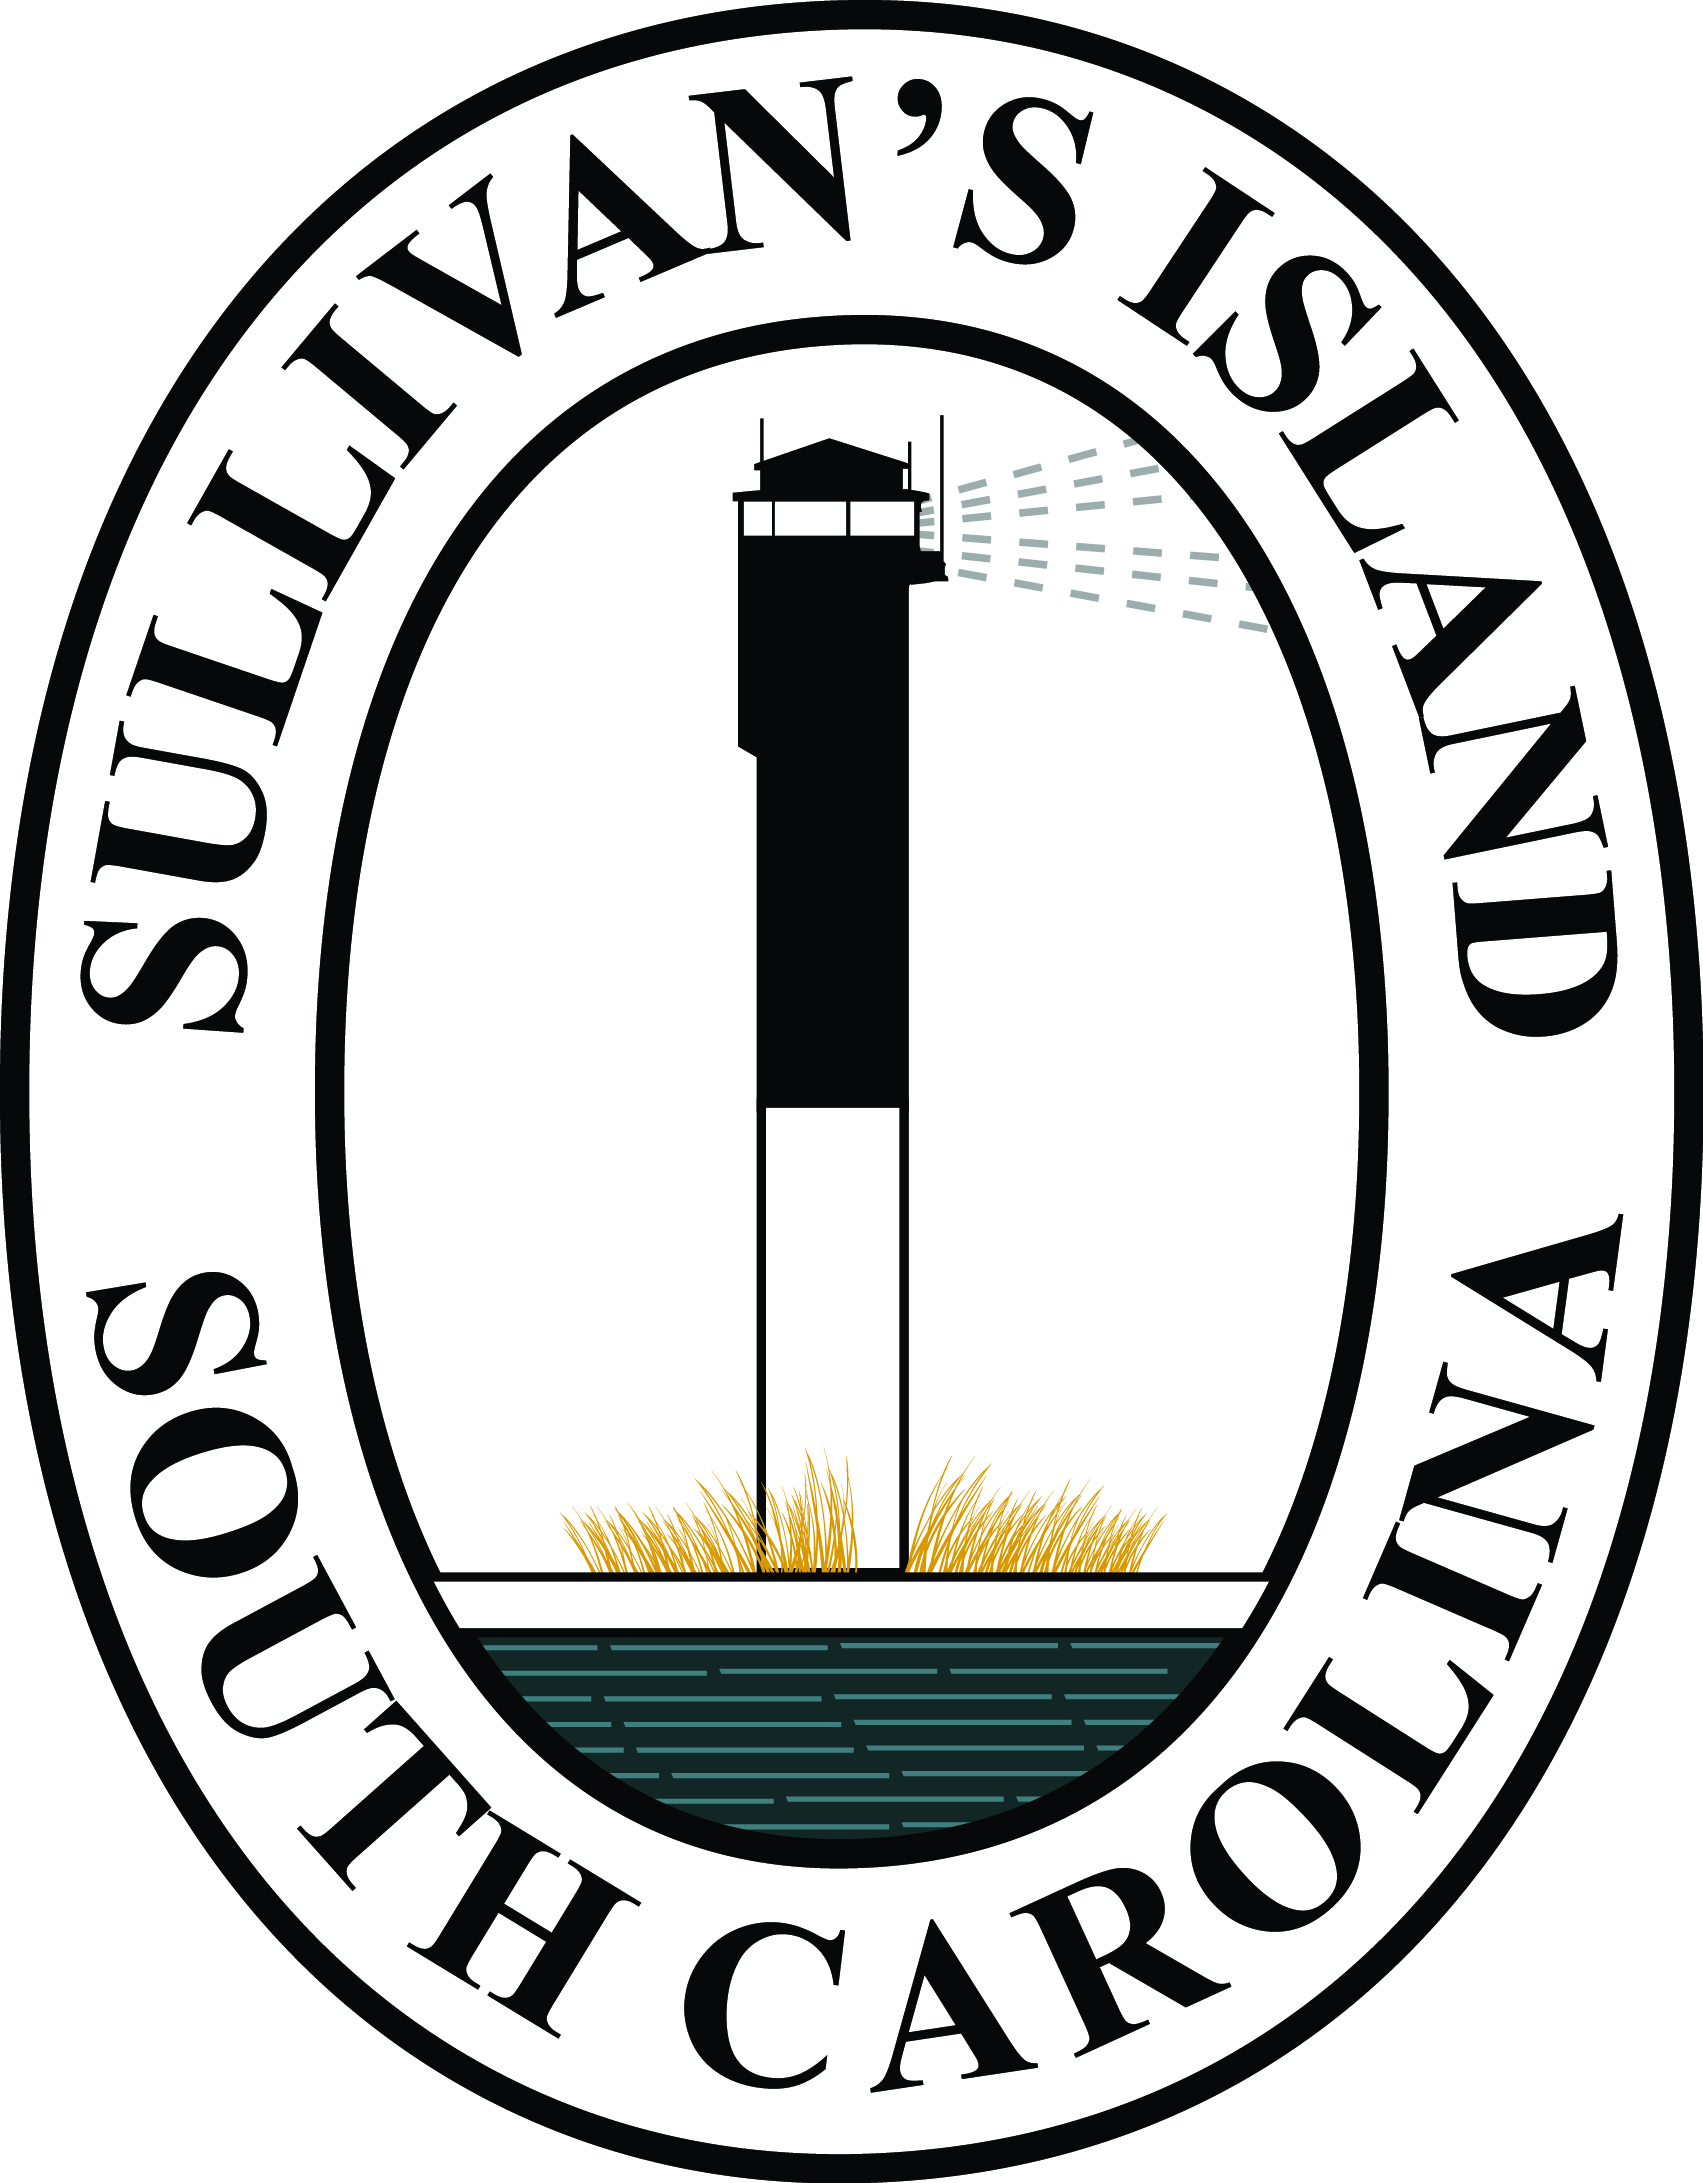 Sullivan's Island South Carolina